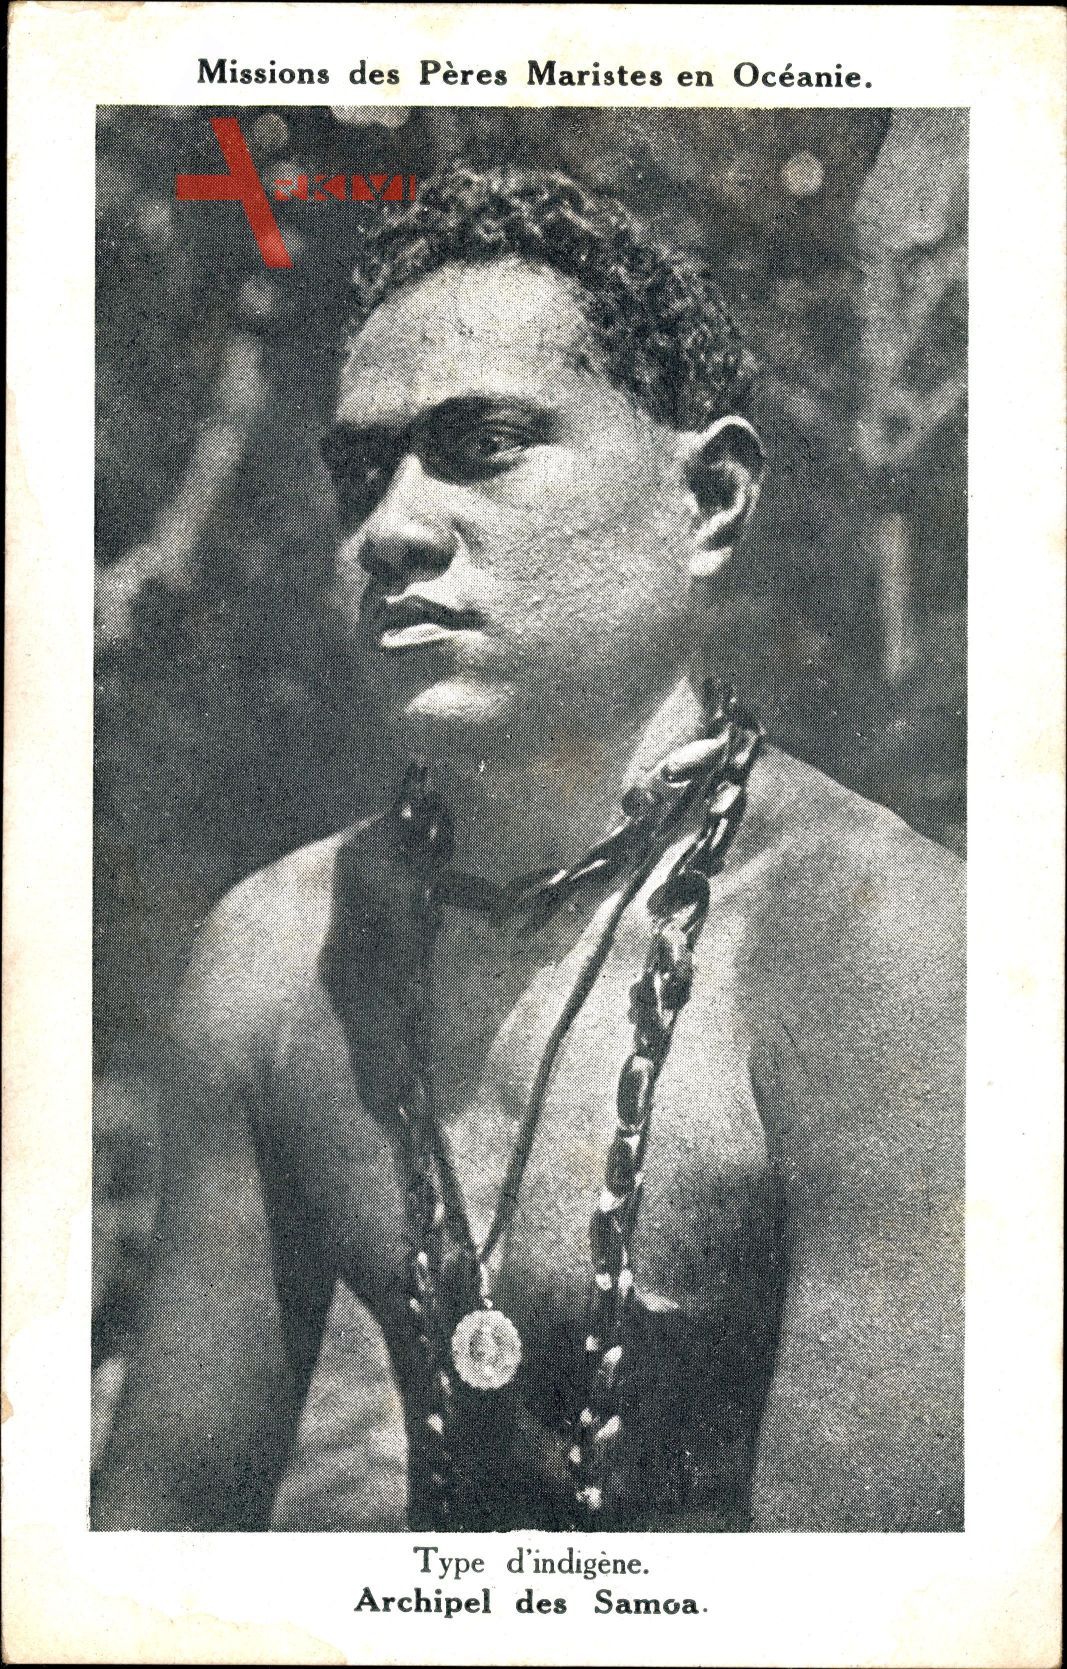 Missions des Pères Maristes en Océanie, Indigène, Archipel des Samoa